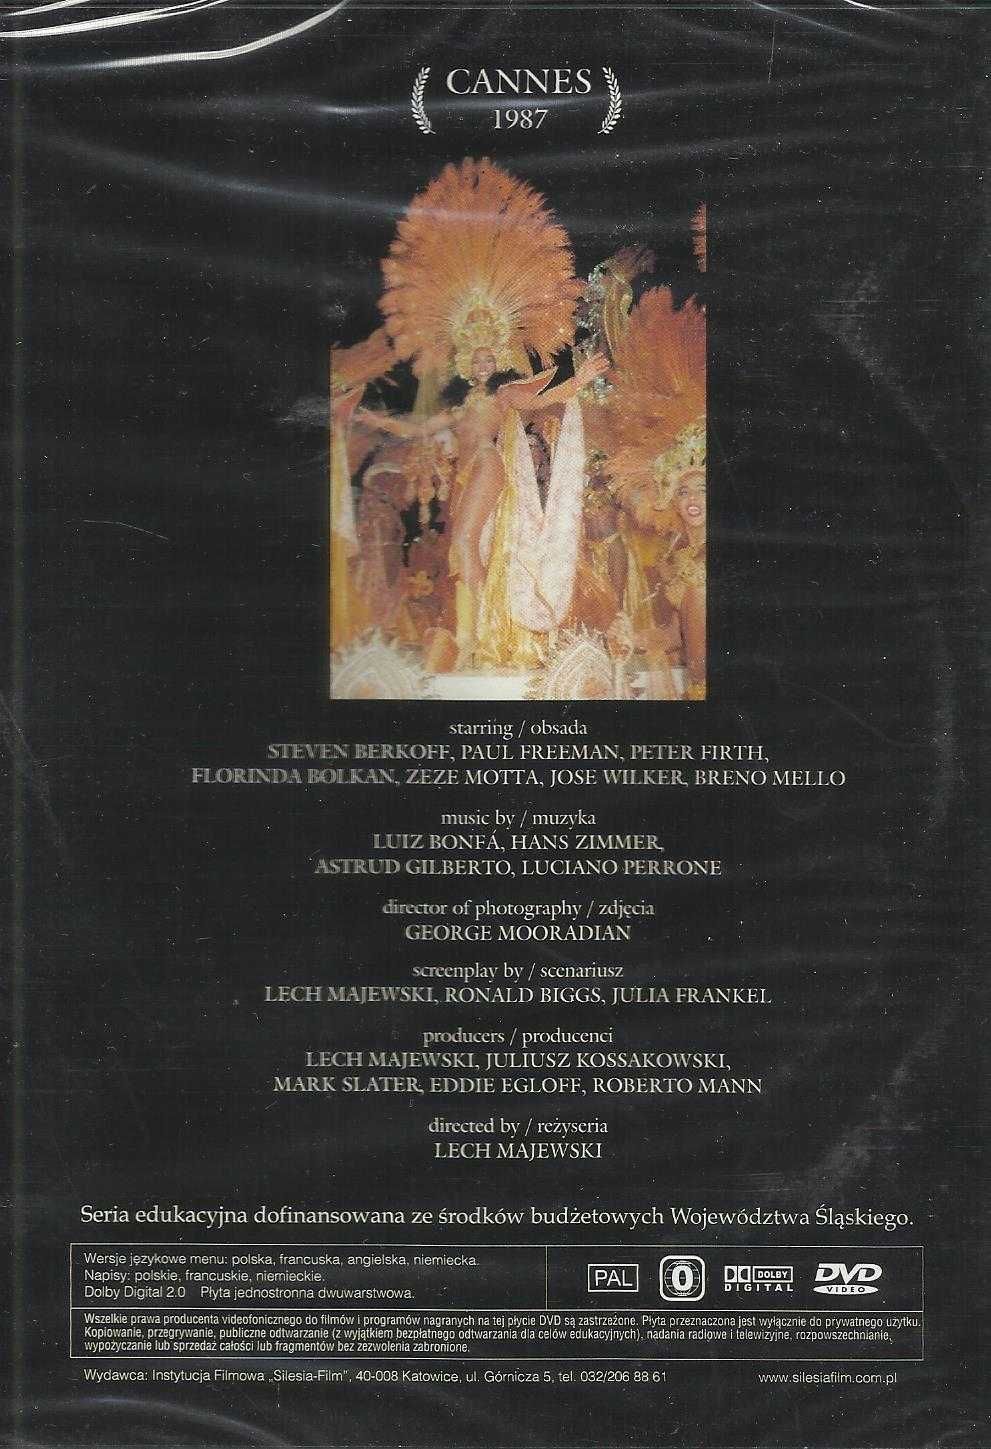 WIĘZIEŃ RIO (1989) DVD reż. Lech Majewski Folia!